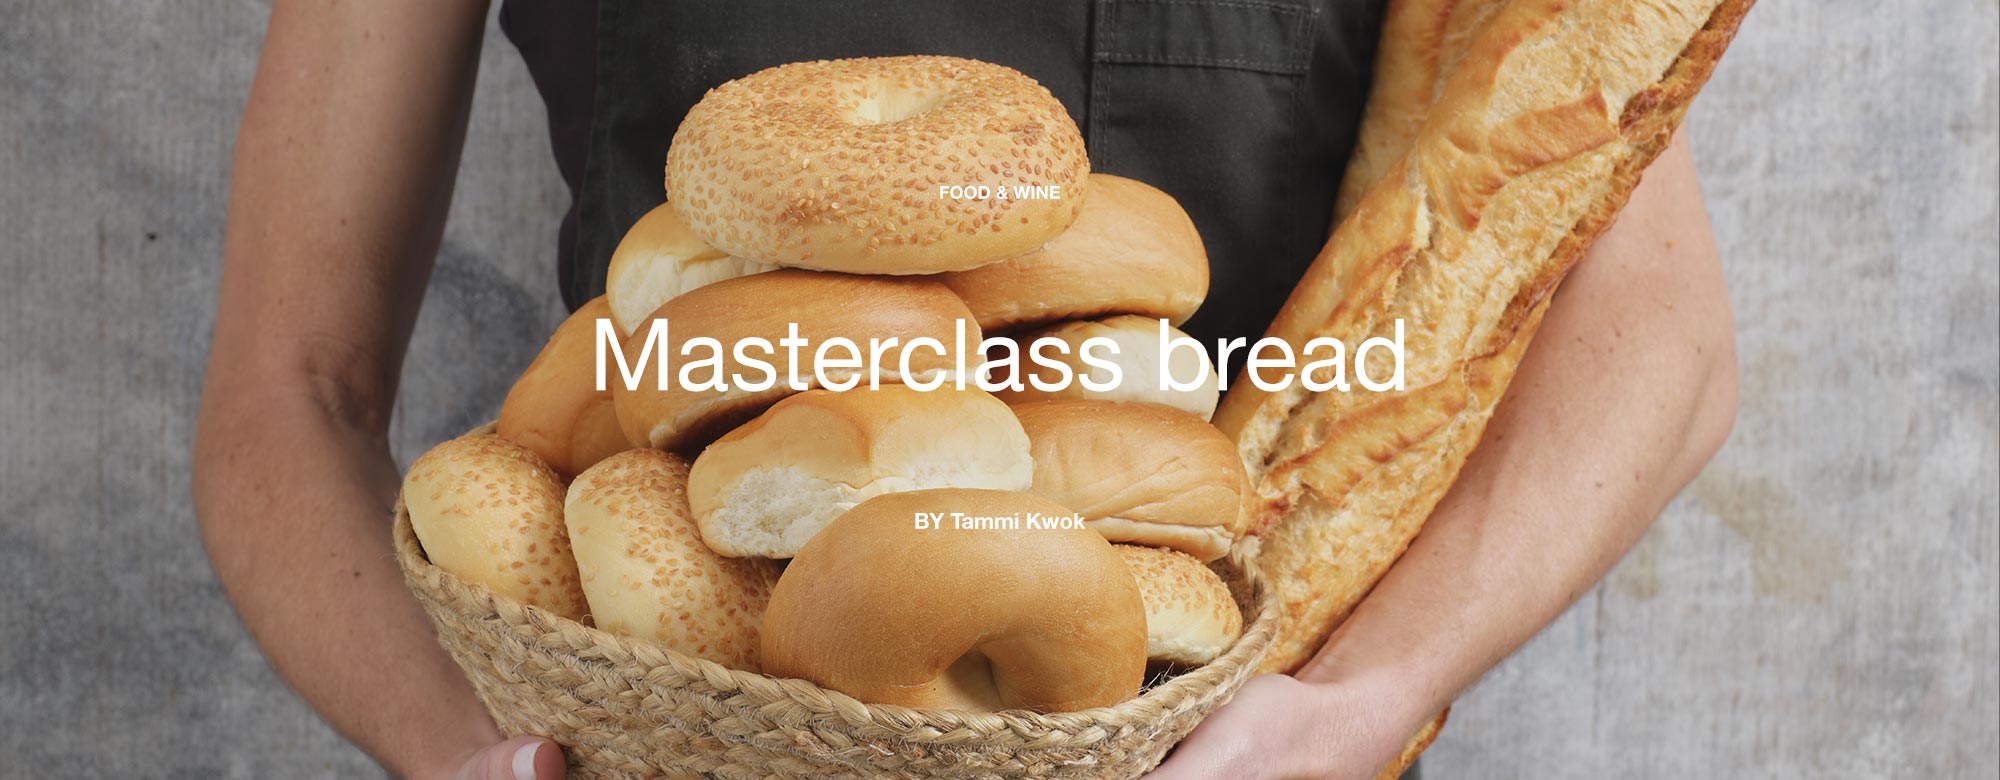 Masterclass bread